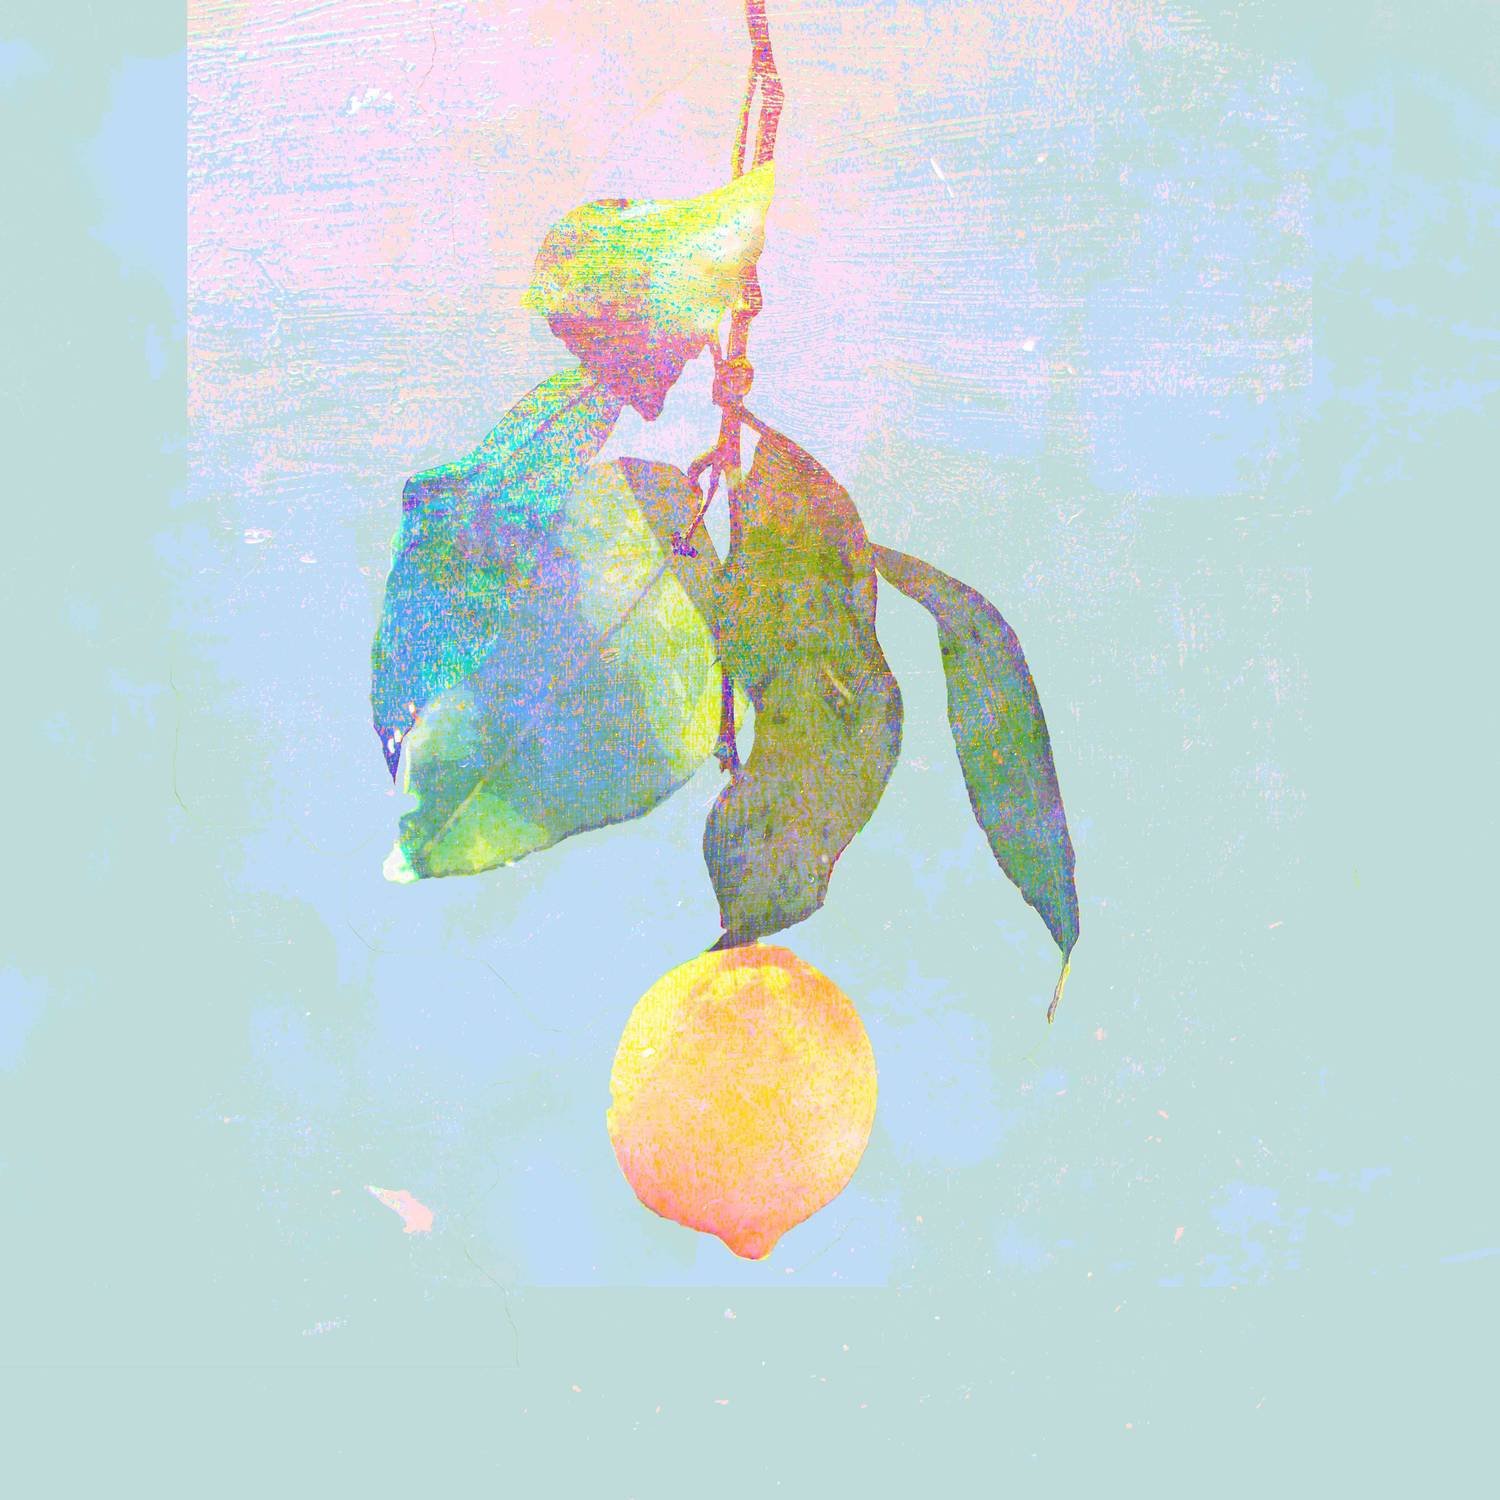 米津玄師《Lemon》 [FLAC/MP3-320kbps]